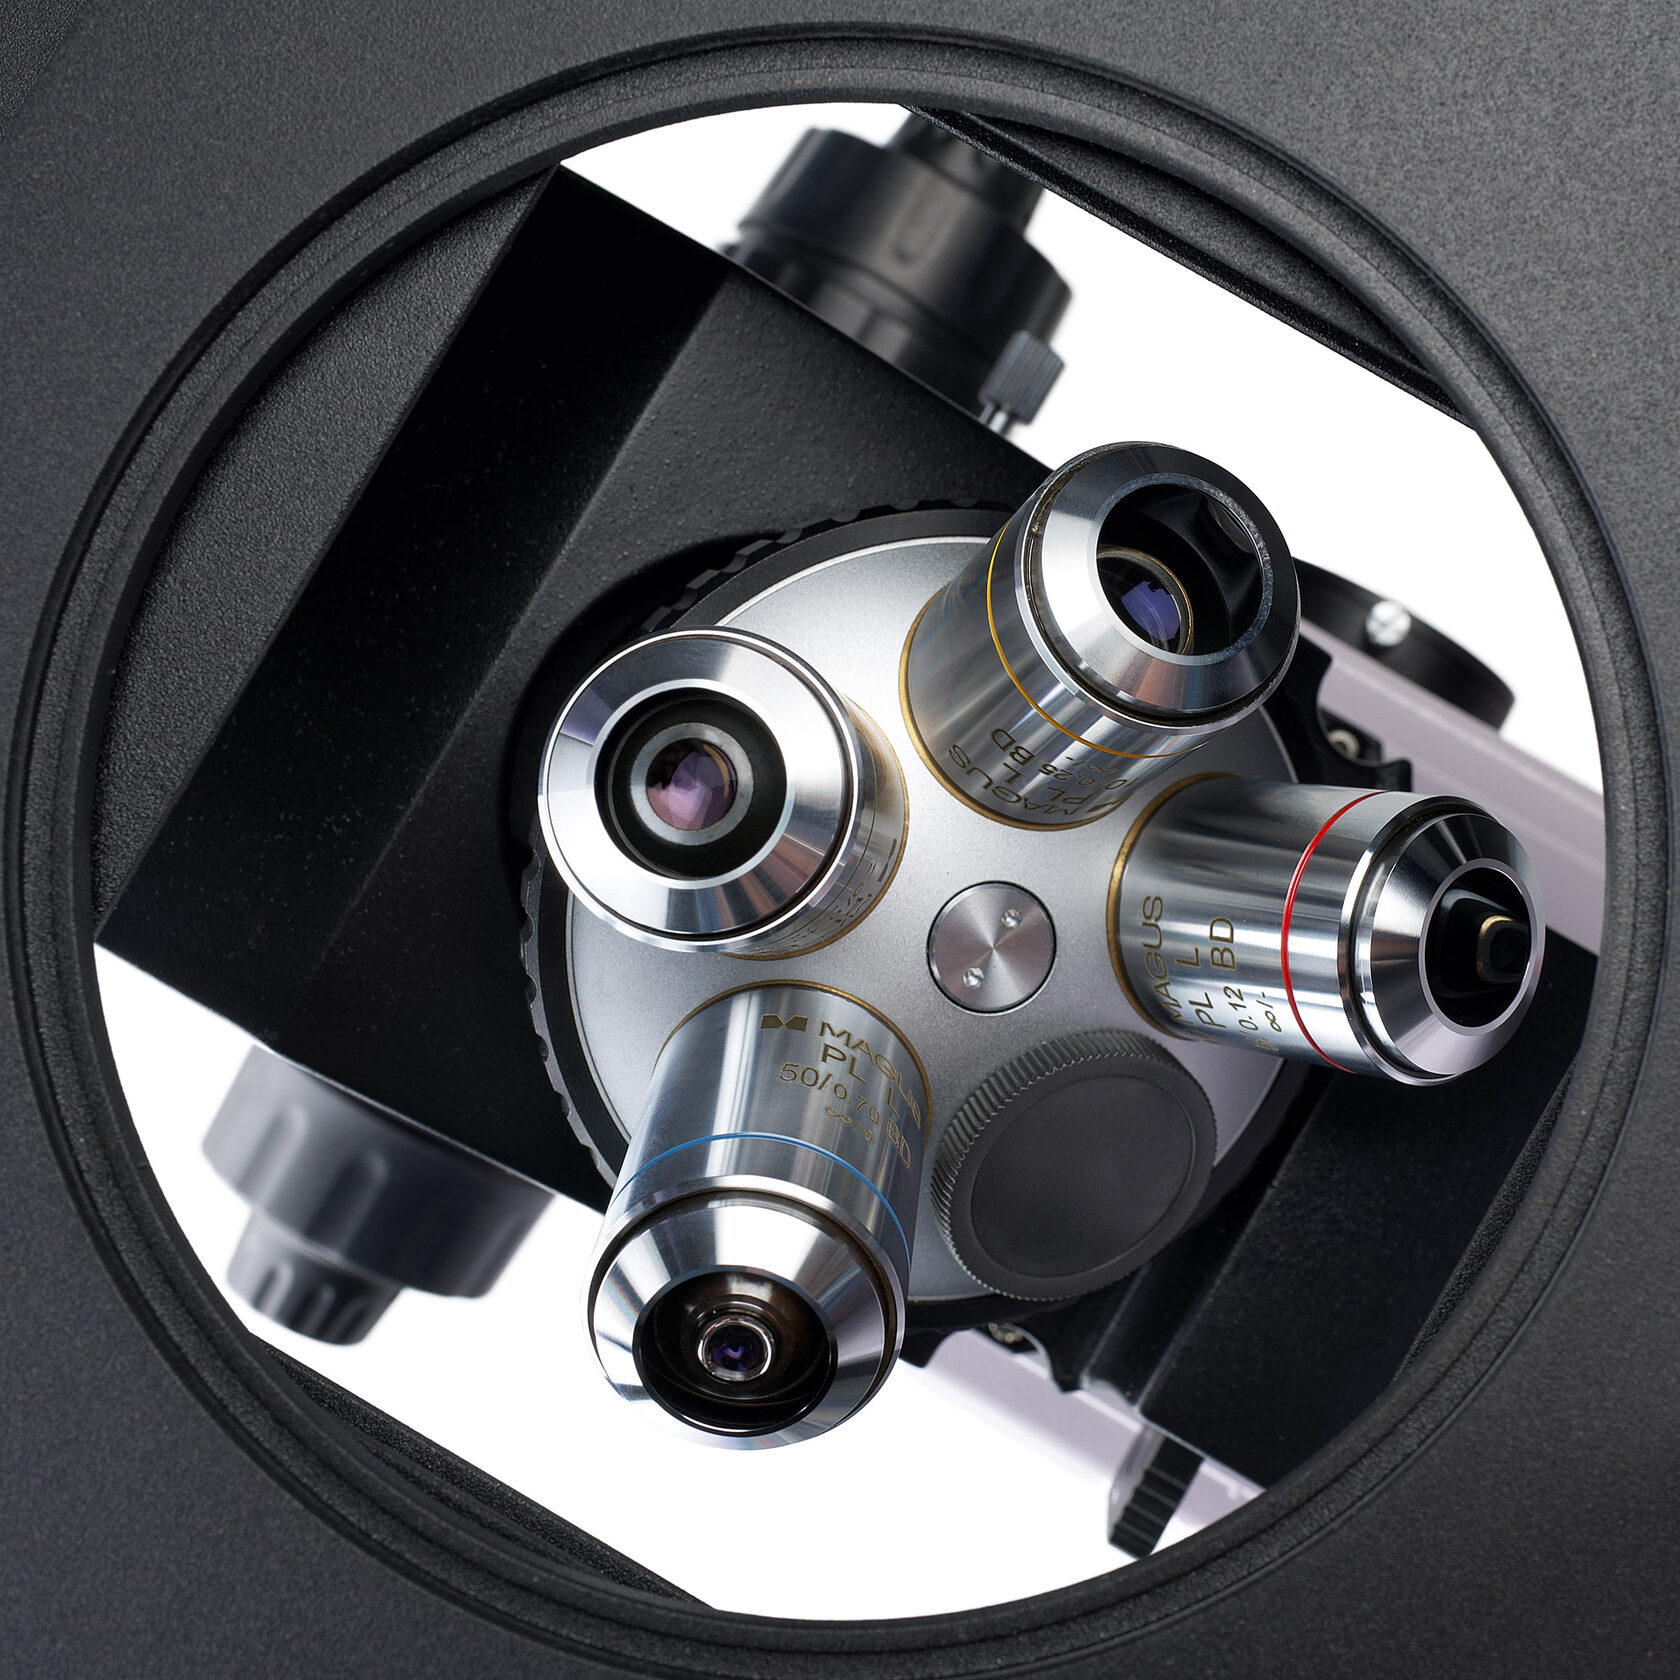 Металлографический микроскоп MAGUS Metal V700 BD